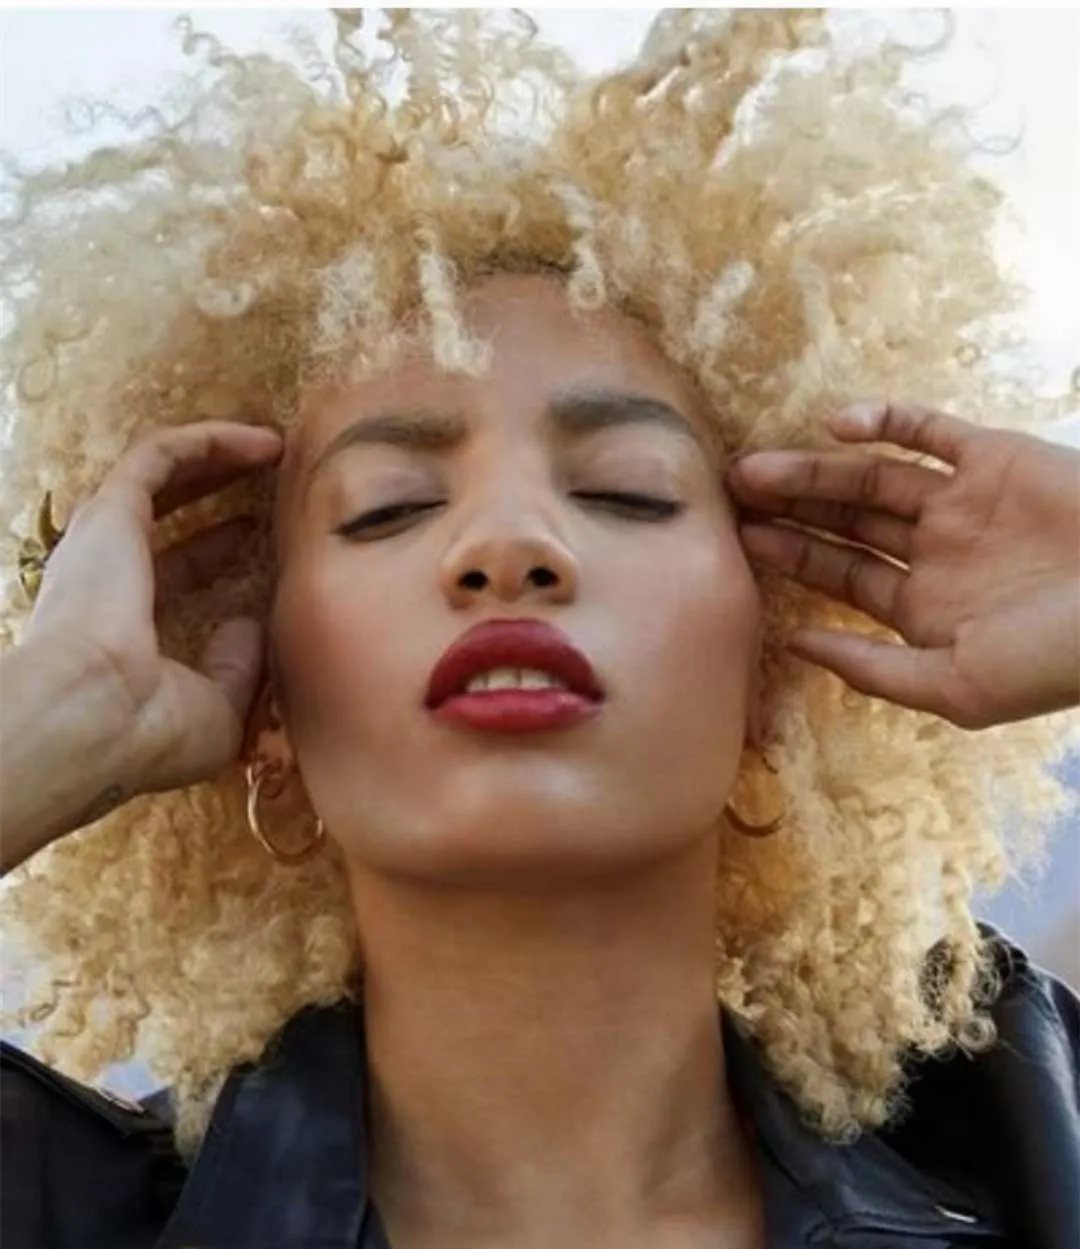 Blonde Vierge humaine Afro Puff Cheveux Bouclés Queue De Cheval Postiches Chignons Afro-Américain Court Crépus Bouclés Wrap Chignon Cordon pour Femmes Clips